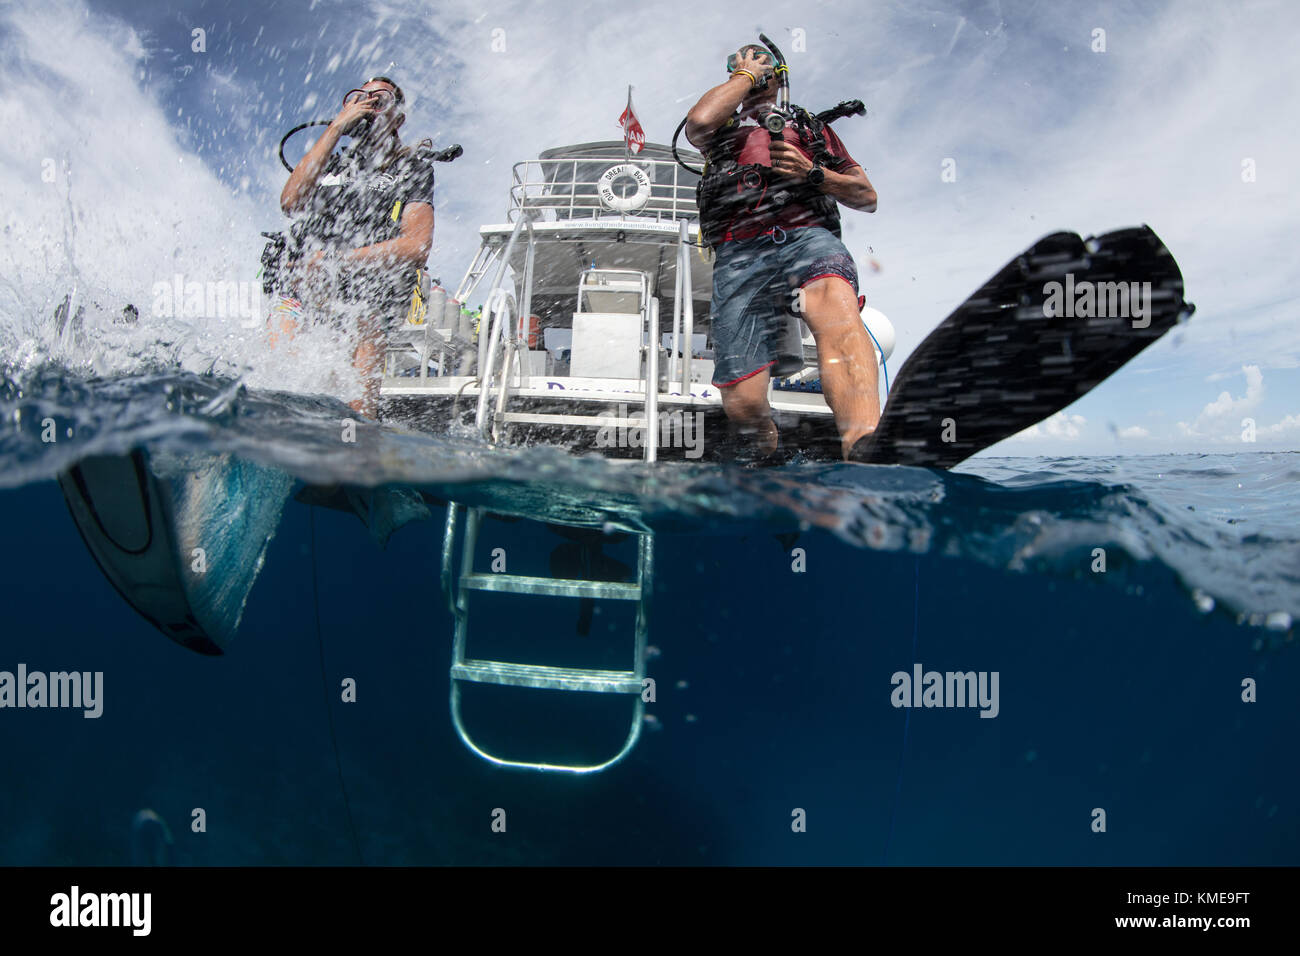 Les plongeurs se retrouvent dans l'eau faisant pas de géant. Banque D'Images